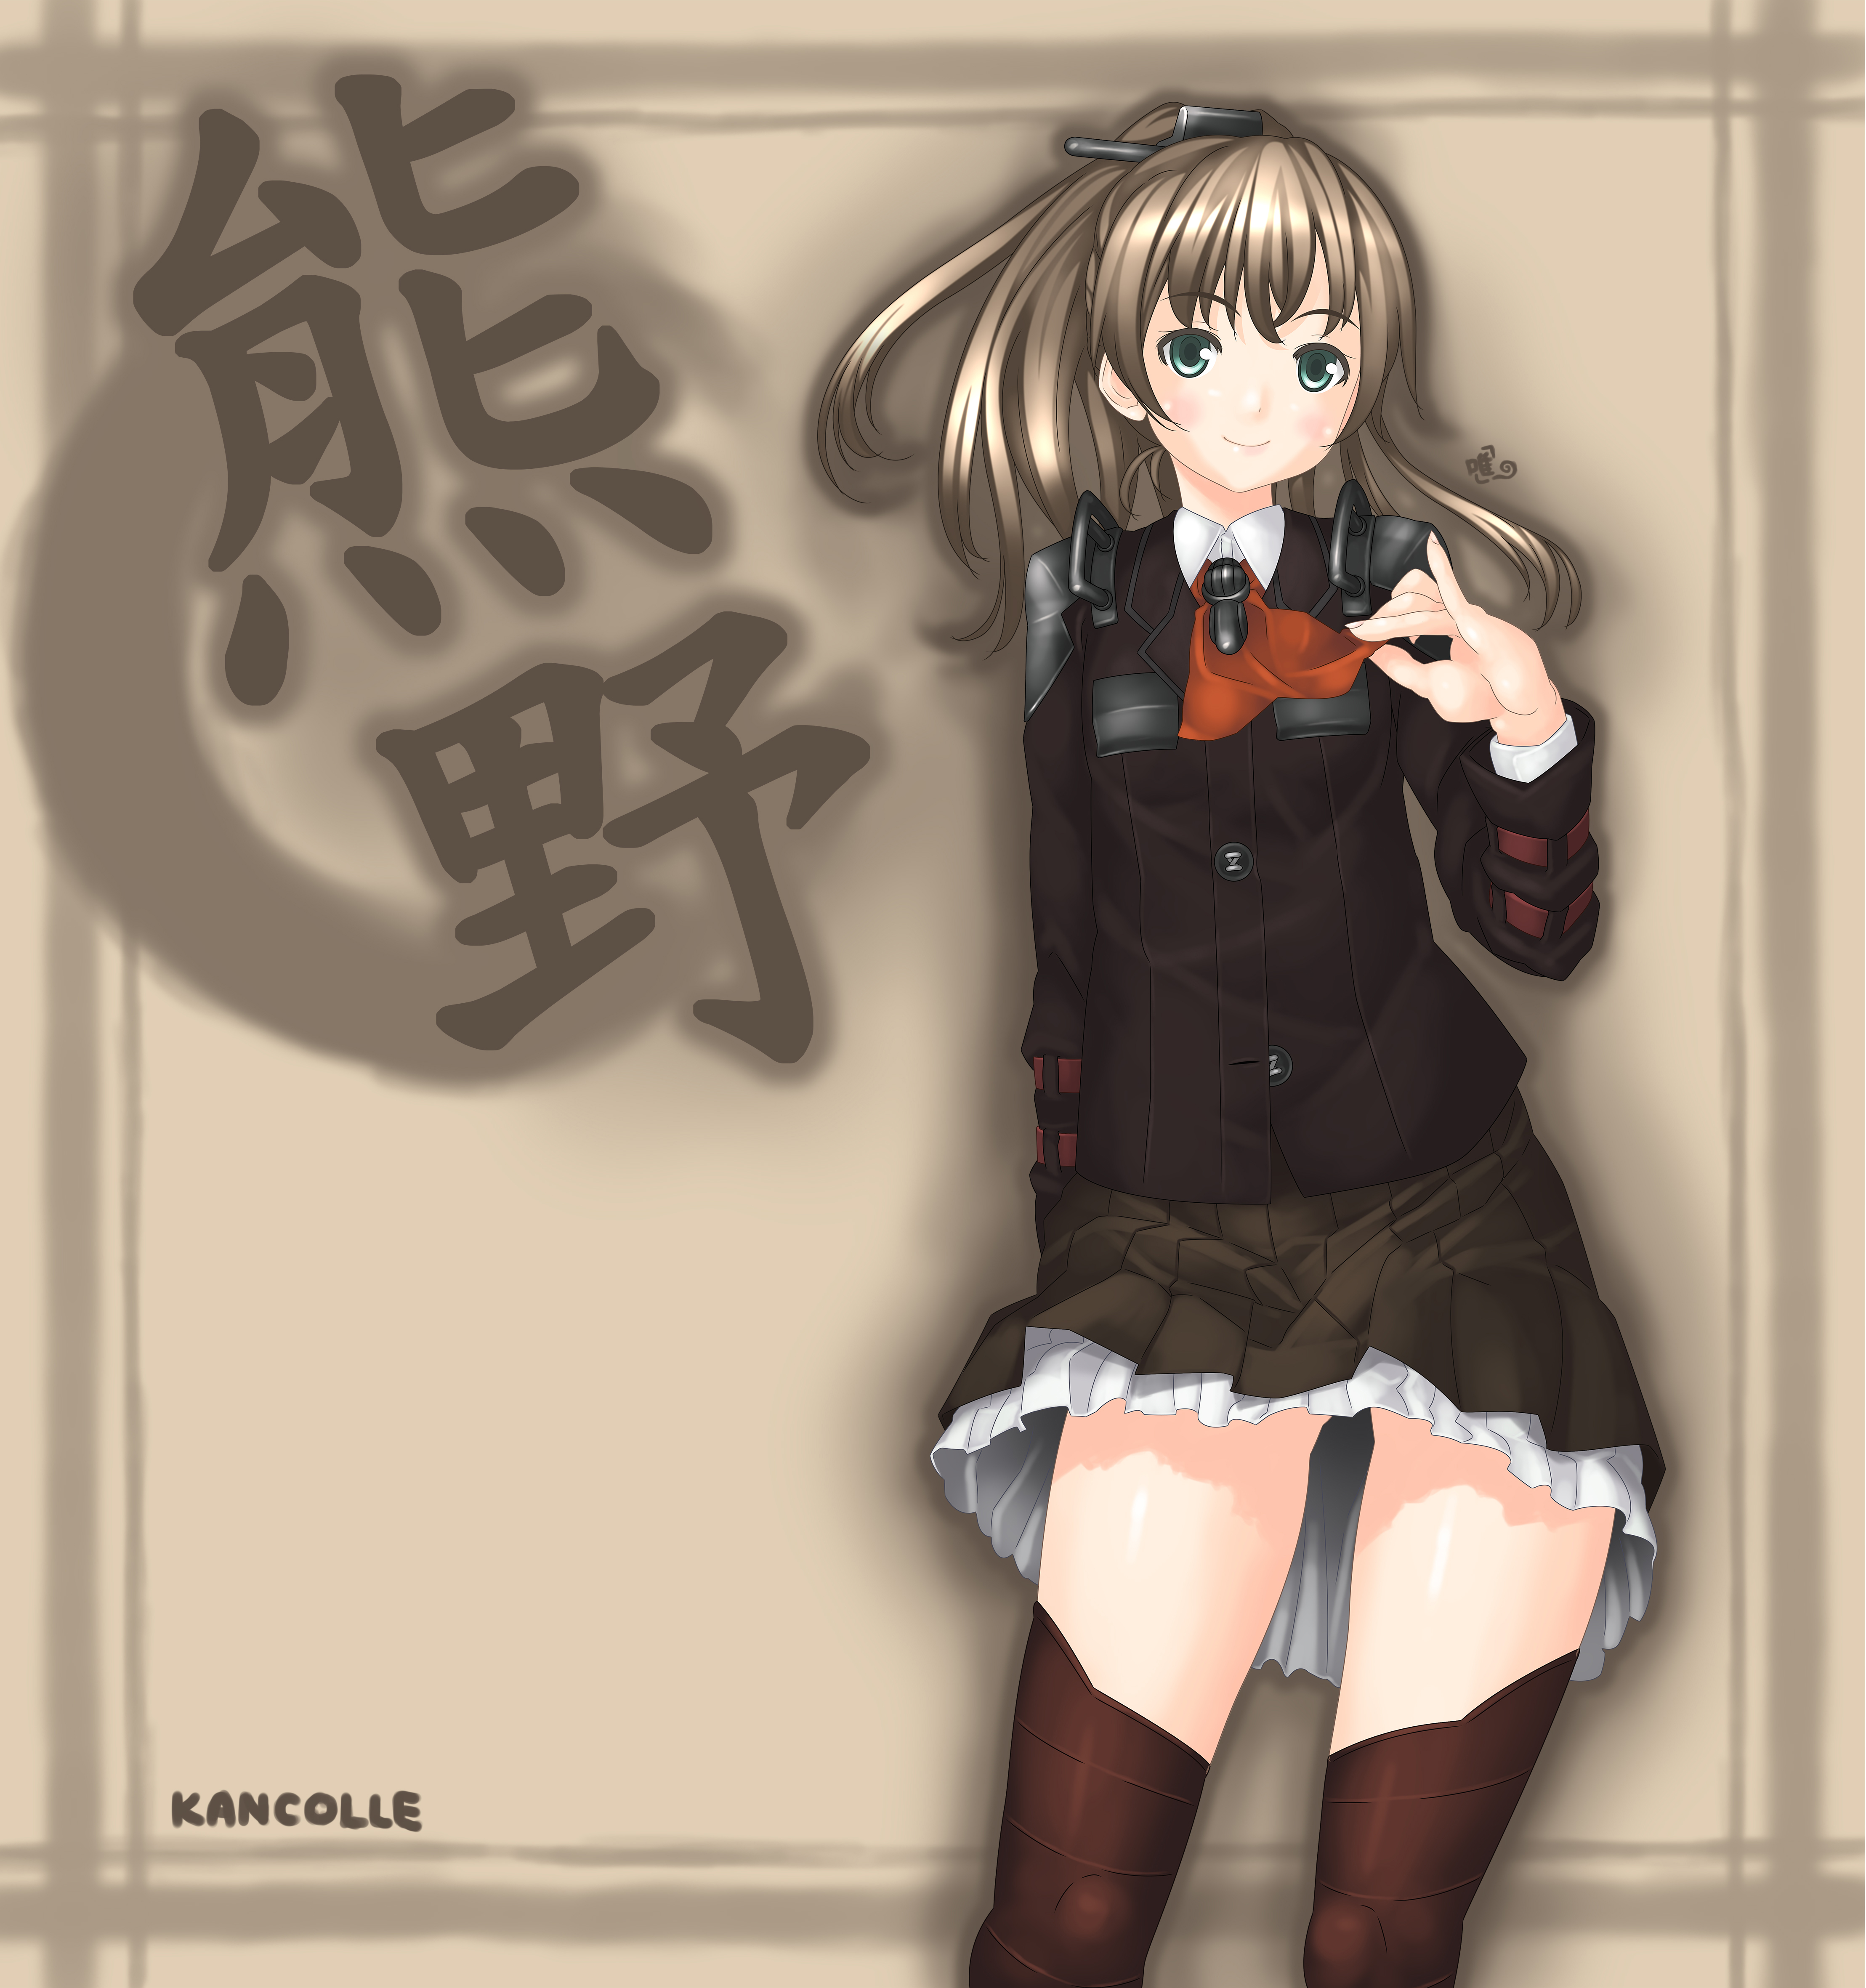 Anime 4434x4724 anime anime girls Kantai Collection Kumano (KanColle) ponytail brunette artwork digital art fan art